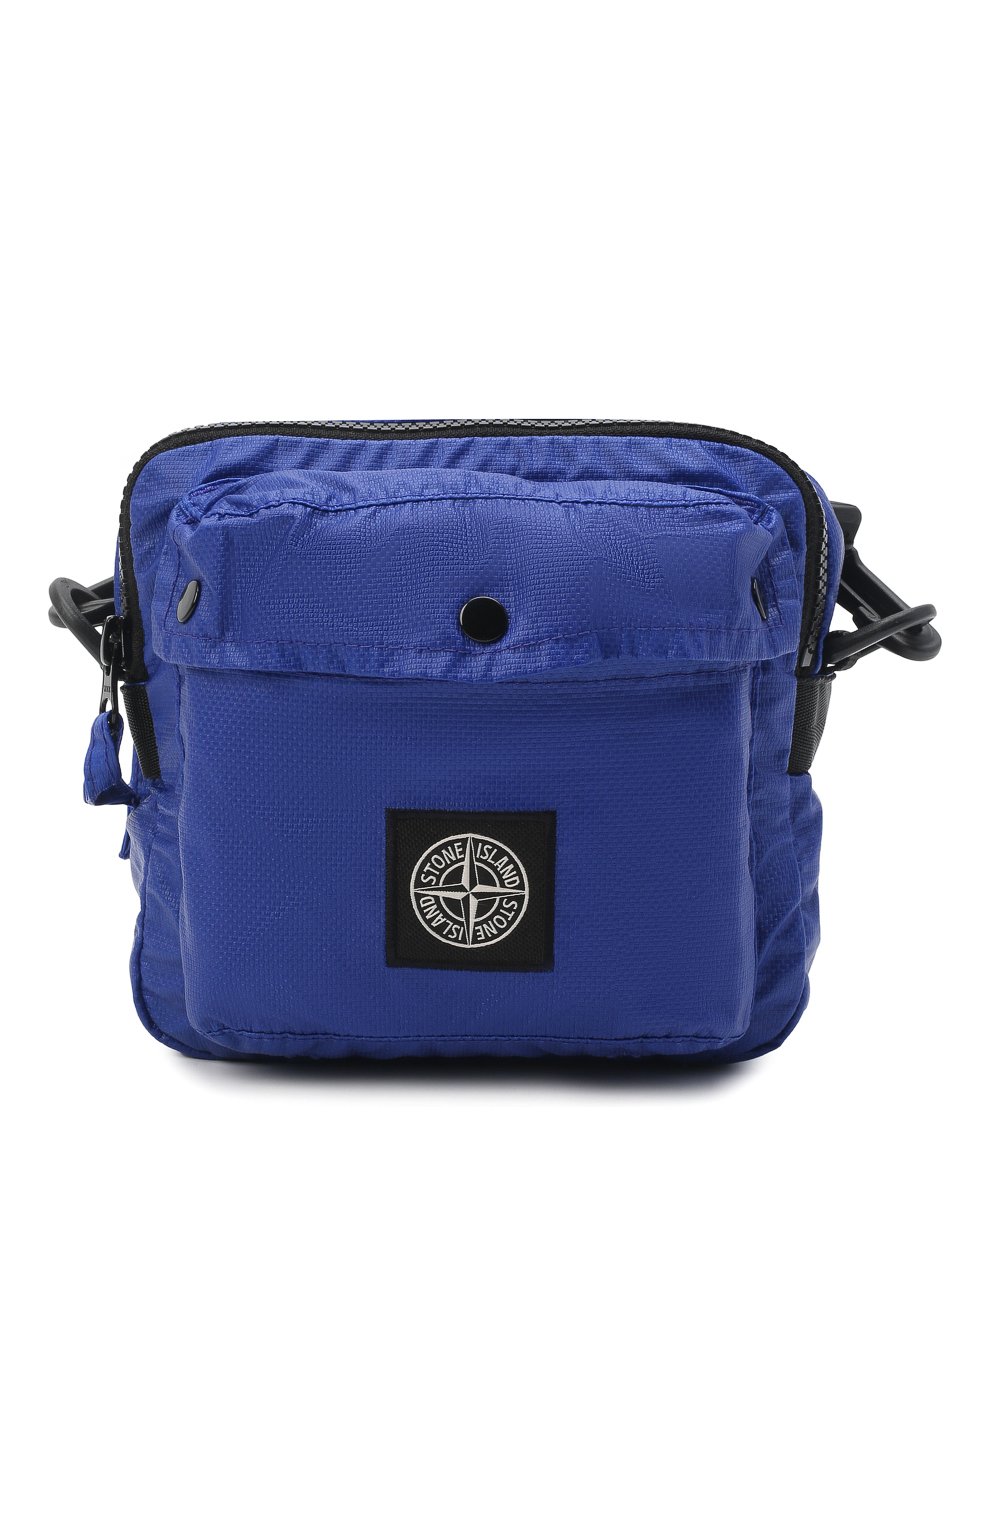 Мужская текстильная сумка STONE ISLAND синего цвета, арт. 751590270 | Фото 1 (Размер: mini; Ремень/цепочка: На ремешке; Материал: Текстиль)